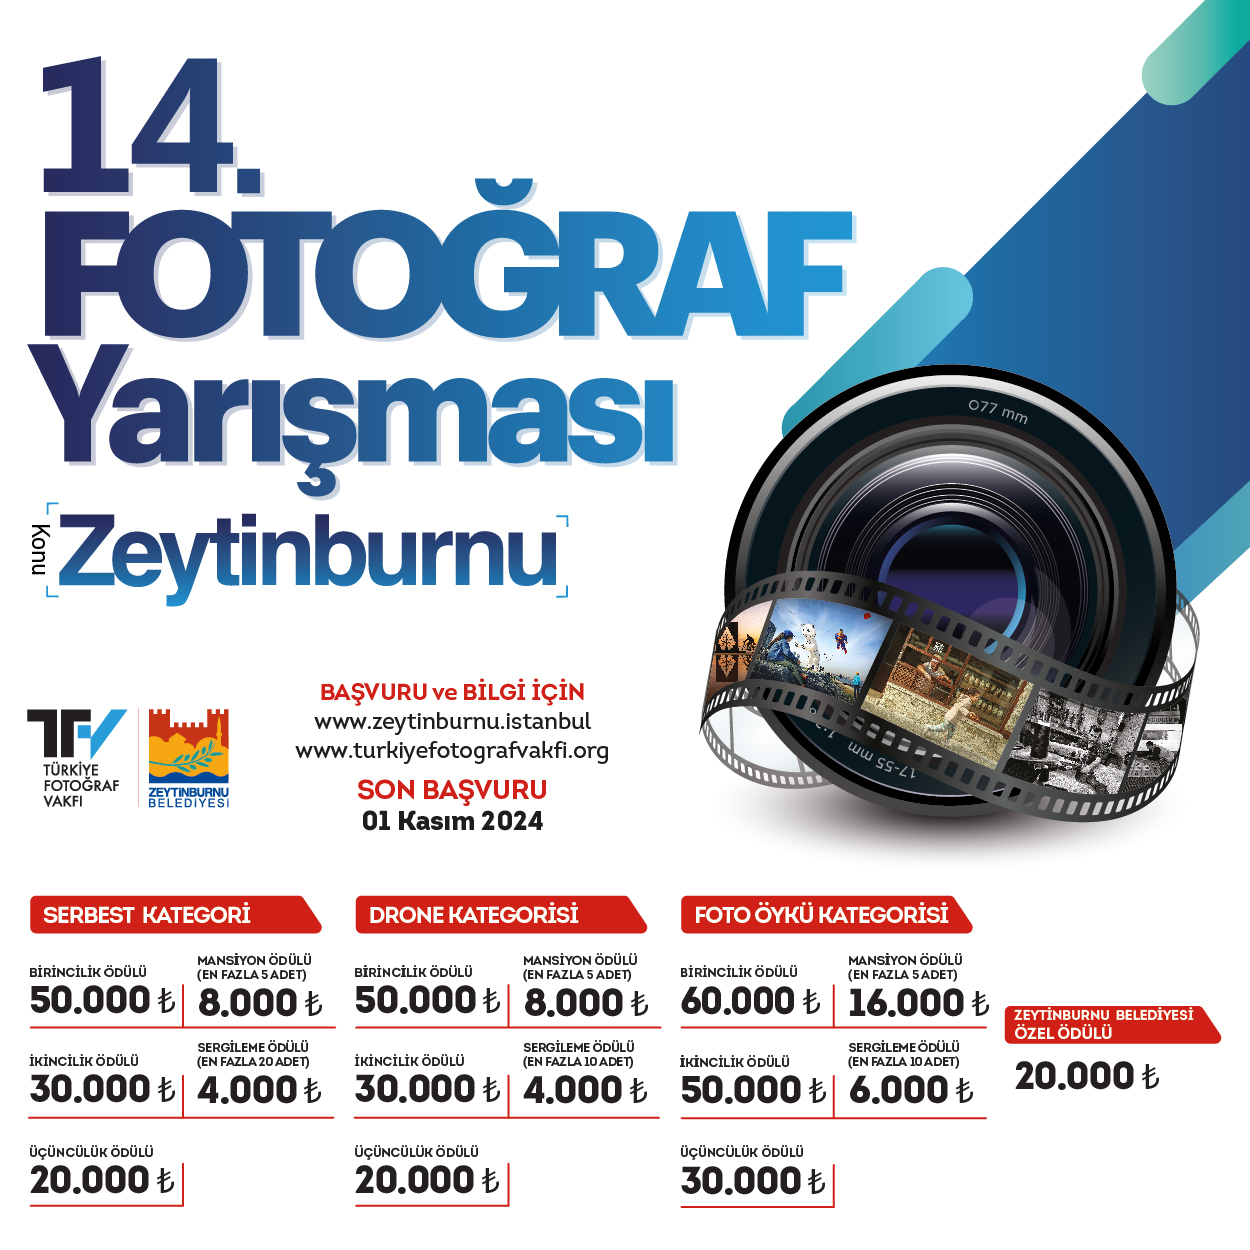 Zeytinburnu ”Fotoğraf Yarışması”na başvurular başladı